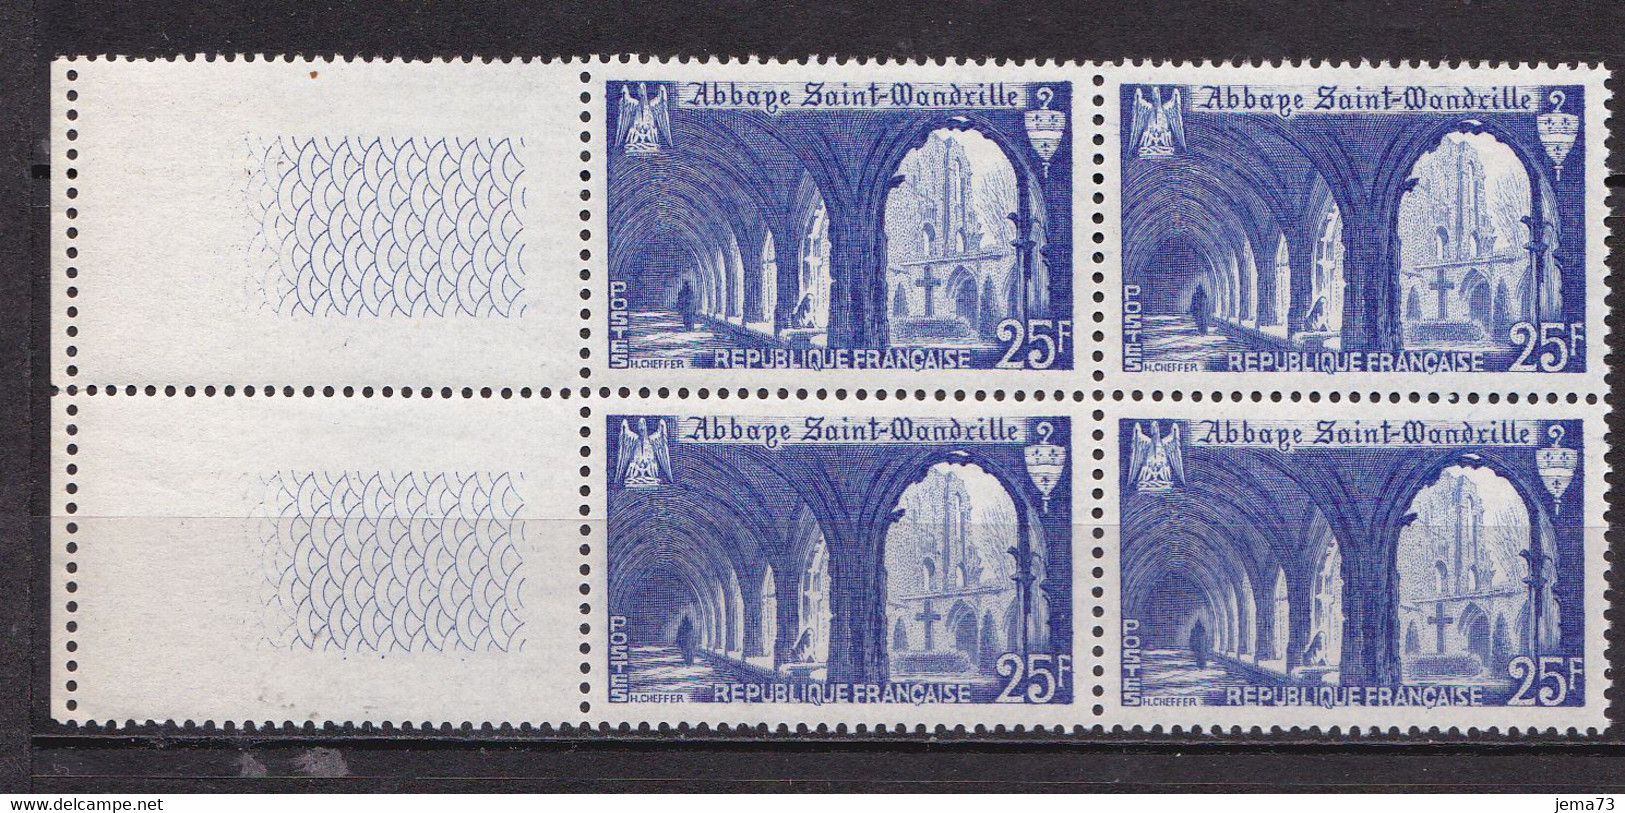 N° 842 Monuments Et Sites; Abbaye De Saint Wandrille Beau Bloc De 4 Timbres Neuf Impeccable - Nuovi